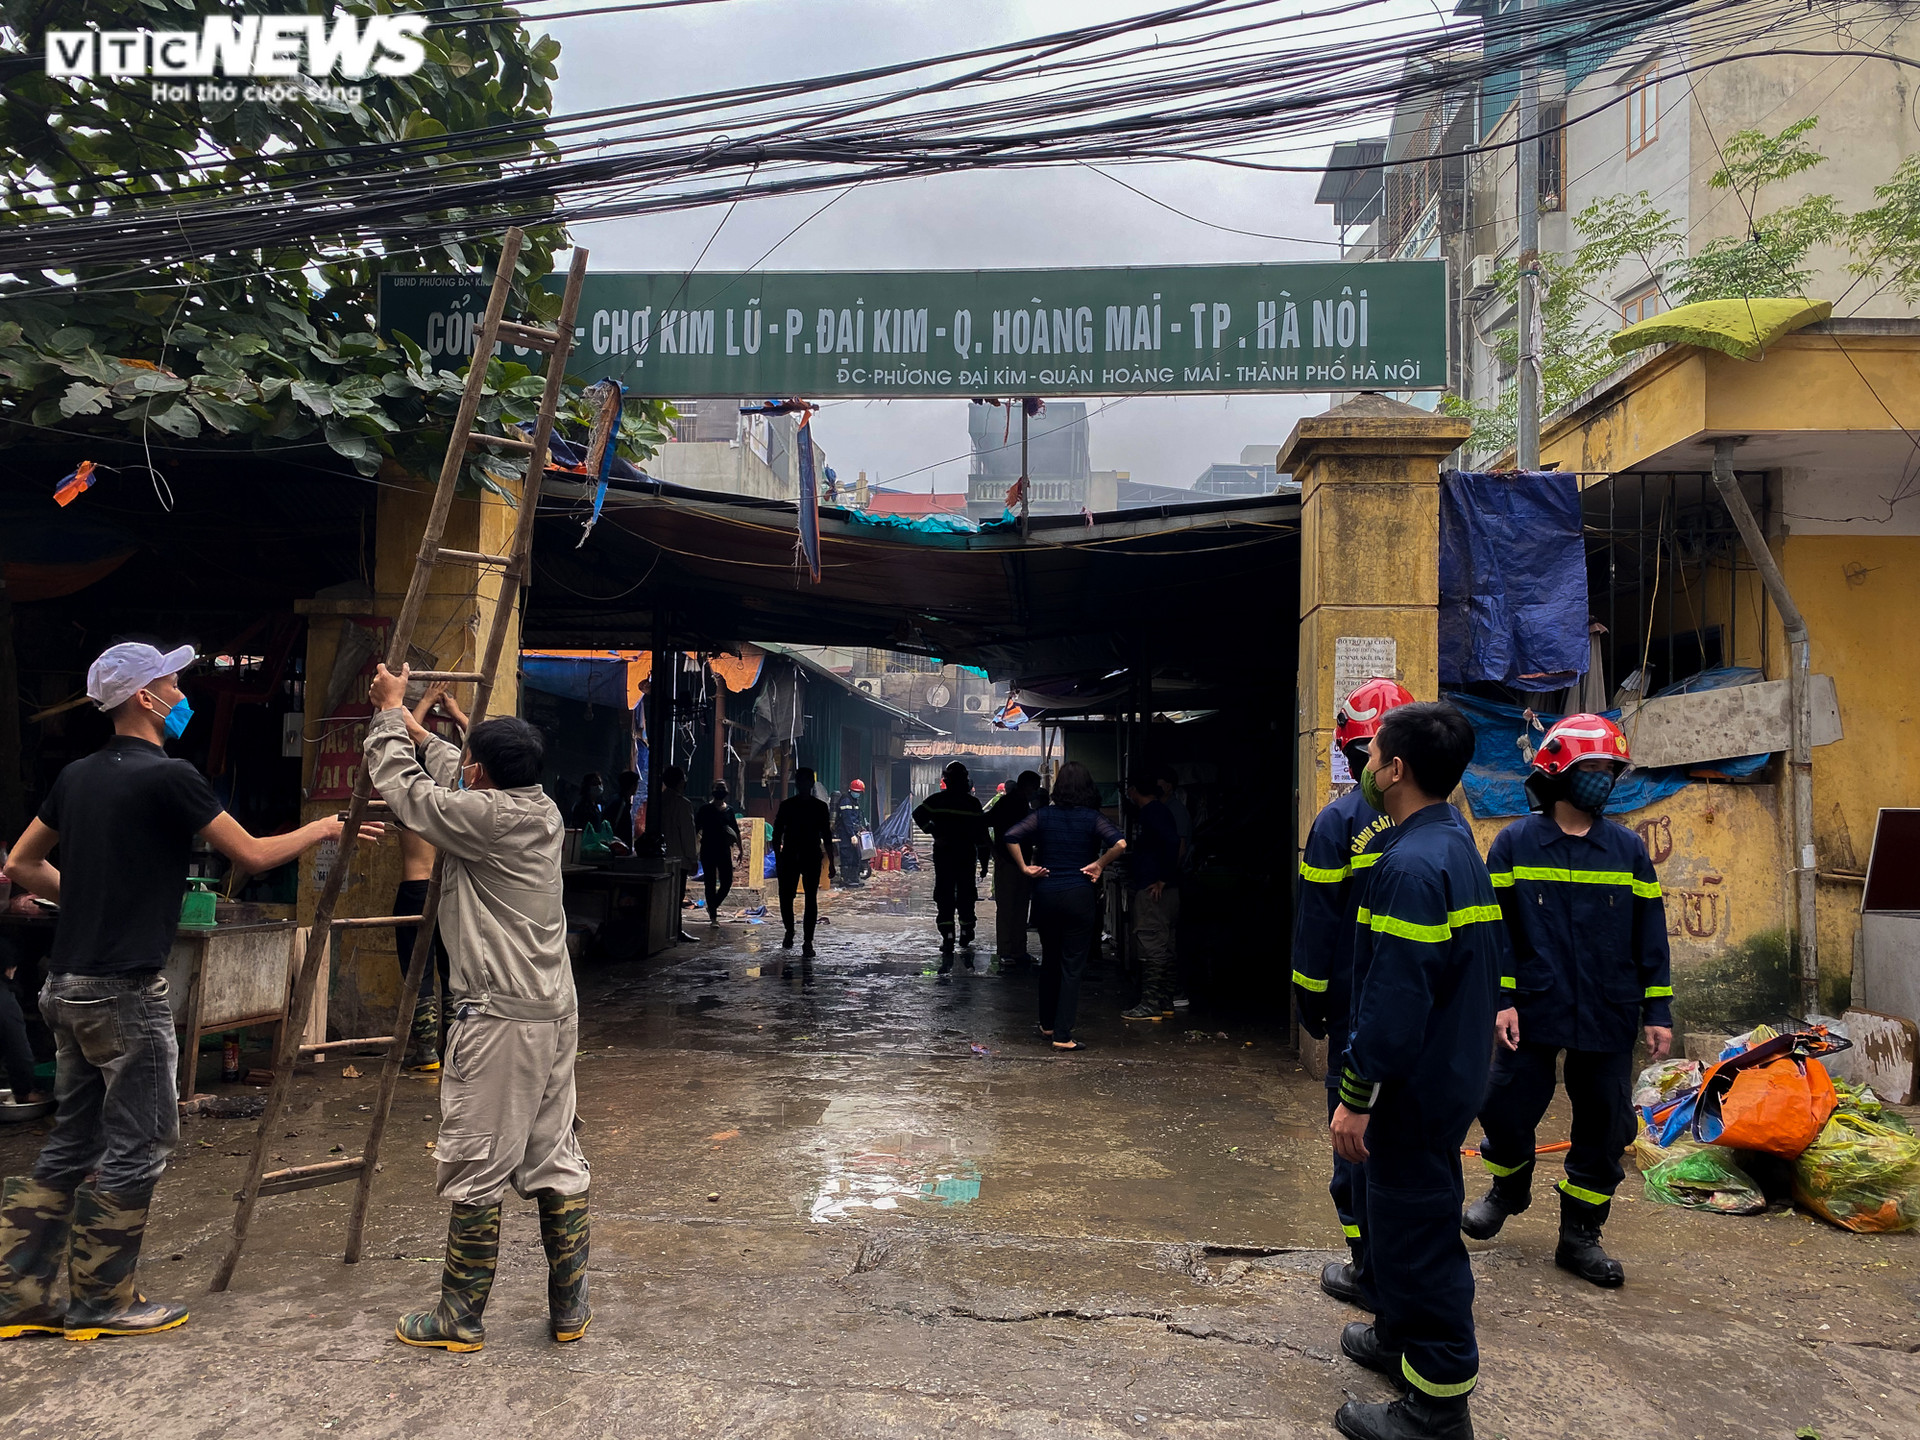 Hà Nội: Cháy kho chứa điều hòa trong chợ Kim Lũ, tiểu thương bê đồ tháo chạy - 1